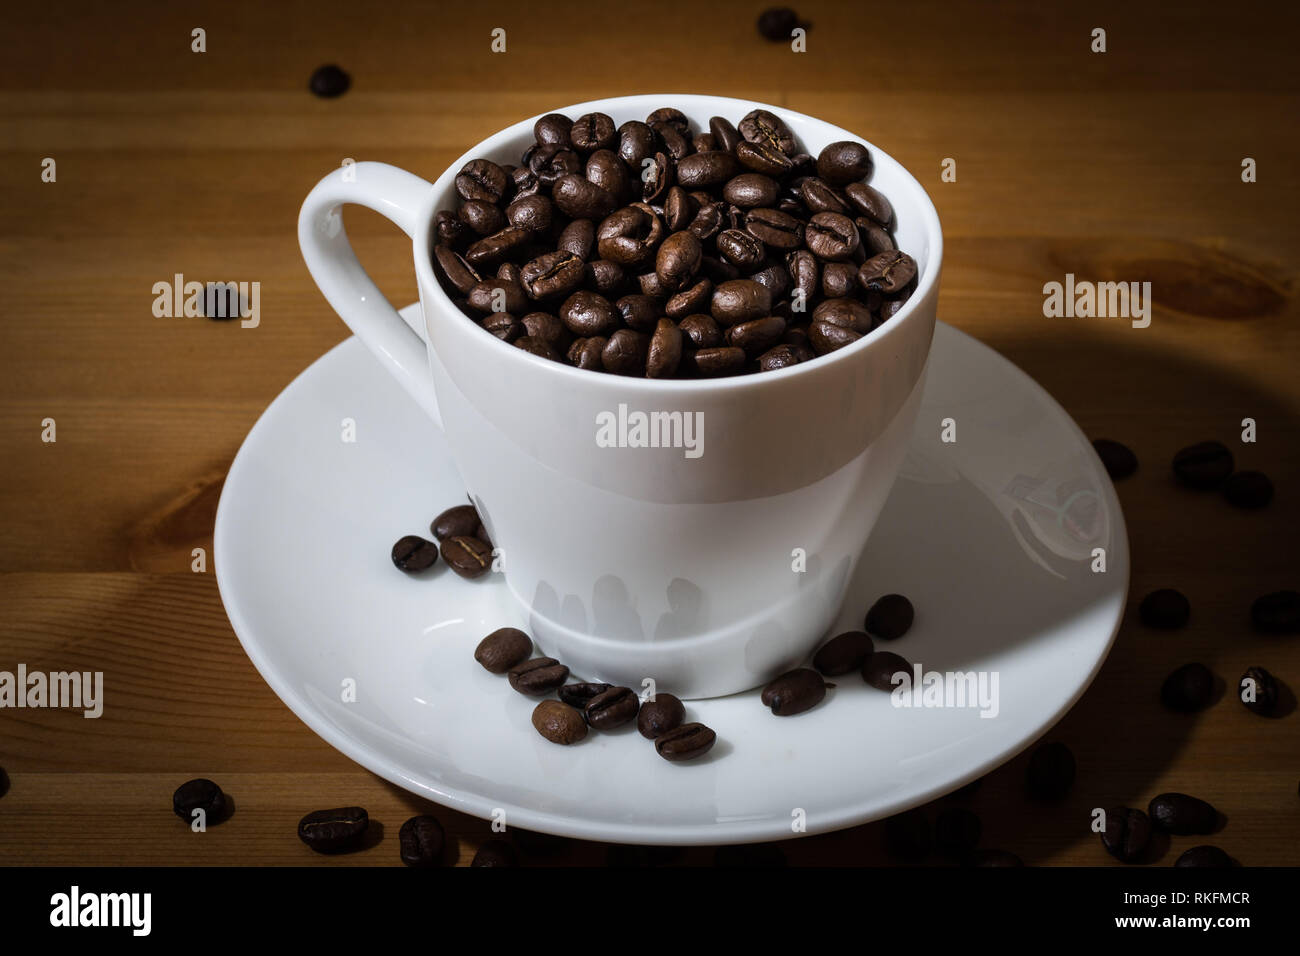 Tasse blanche remplie de grains de café et café en grains éparpillés sur une surface en bois et sur la soucoupe blanche. Banque D'Images